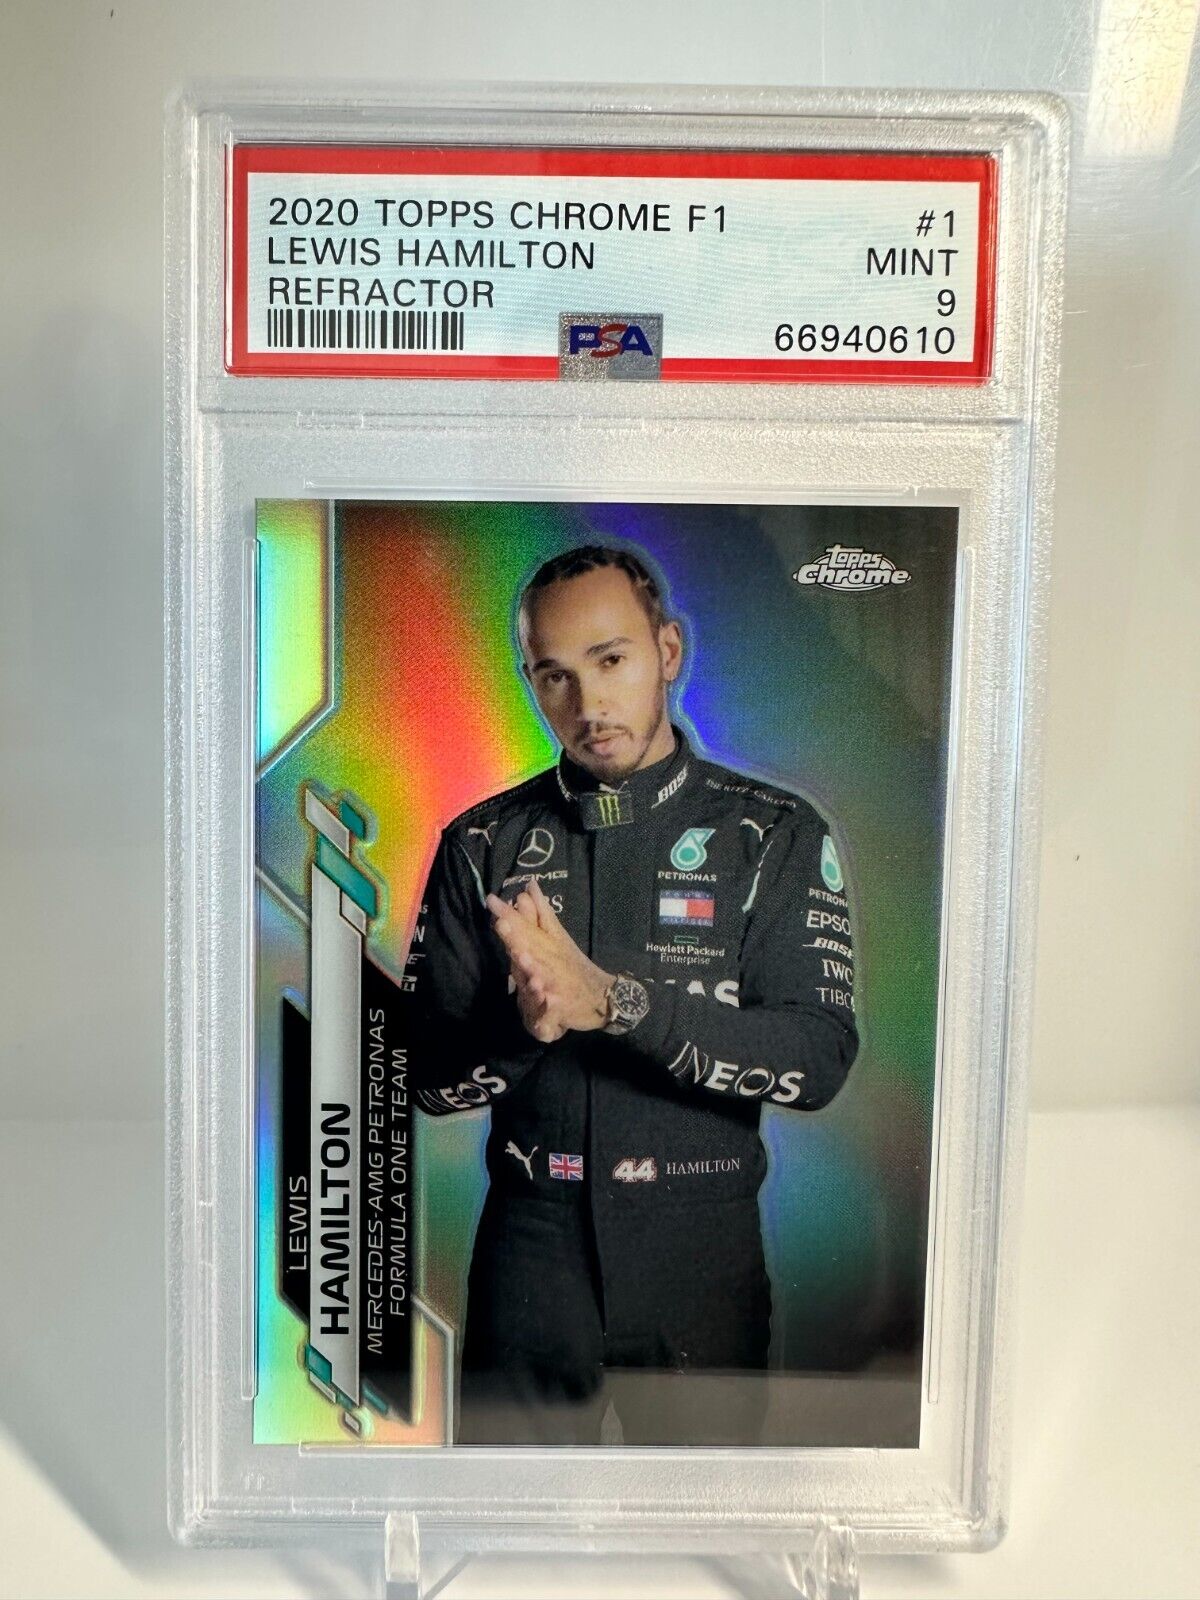 Lewis Hamilton 2020 Topps Chrome Formula 1 Refractor PSA 9 Portrait #1 Mint